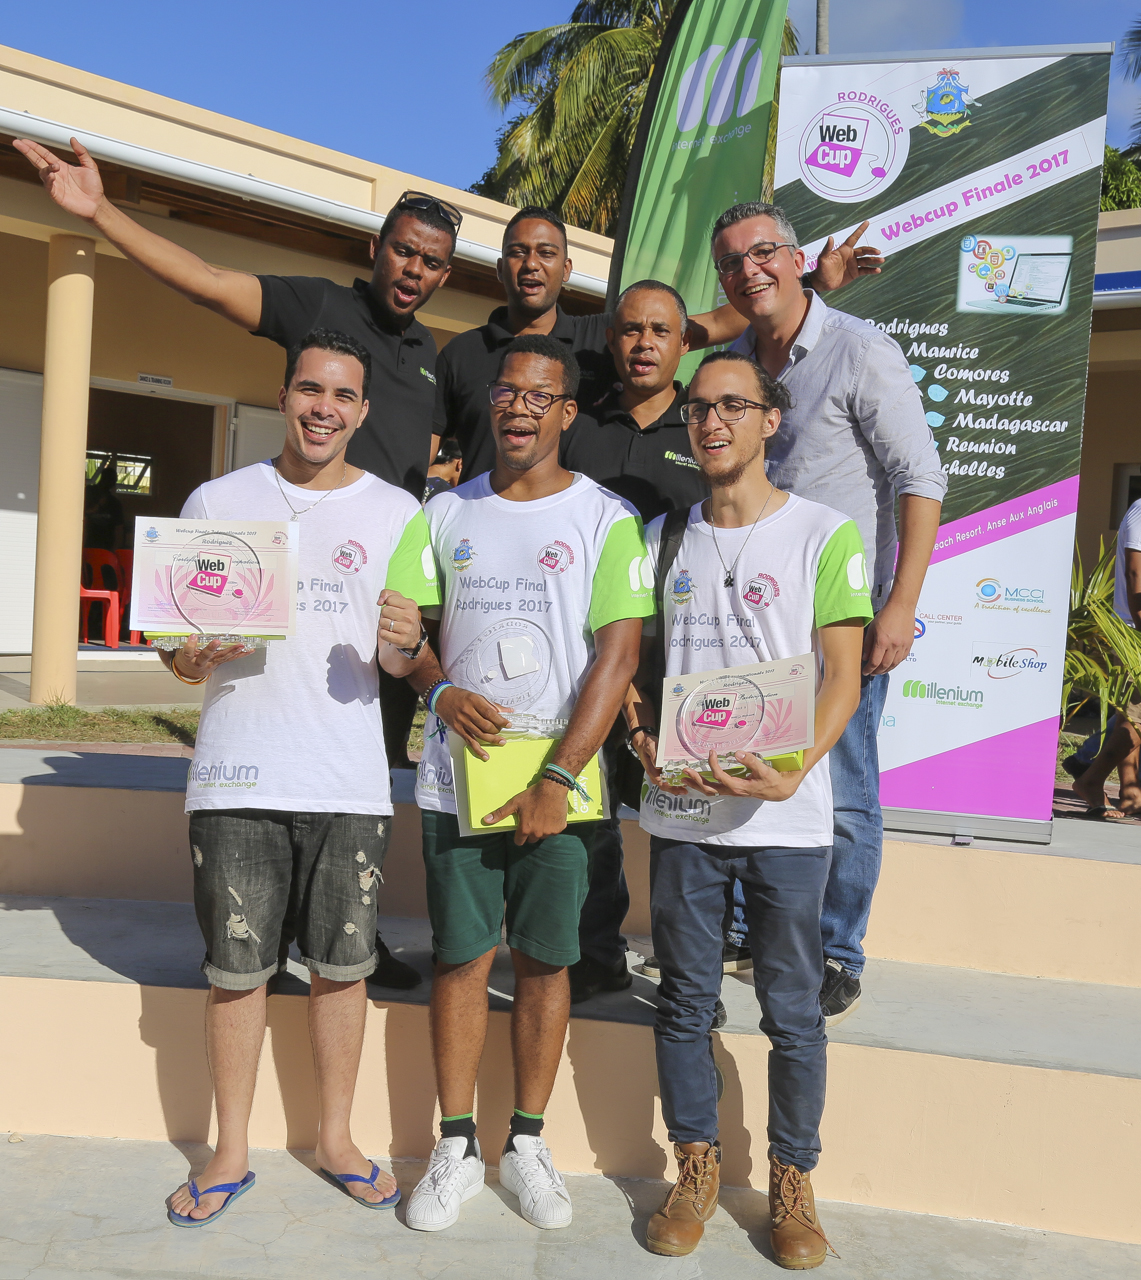 L'équipe de La Réunion gagnante de cette édition 2017